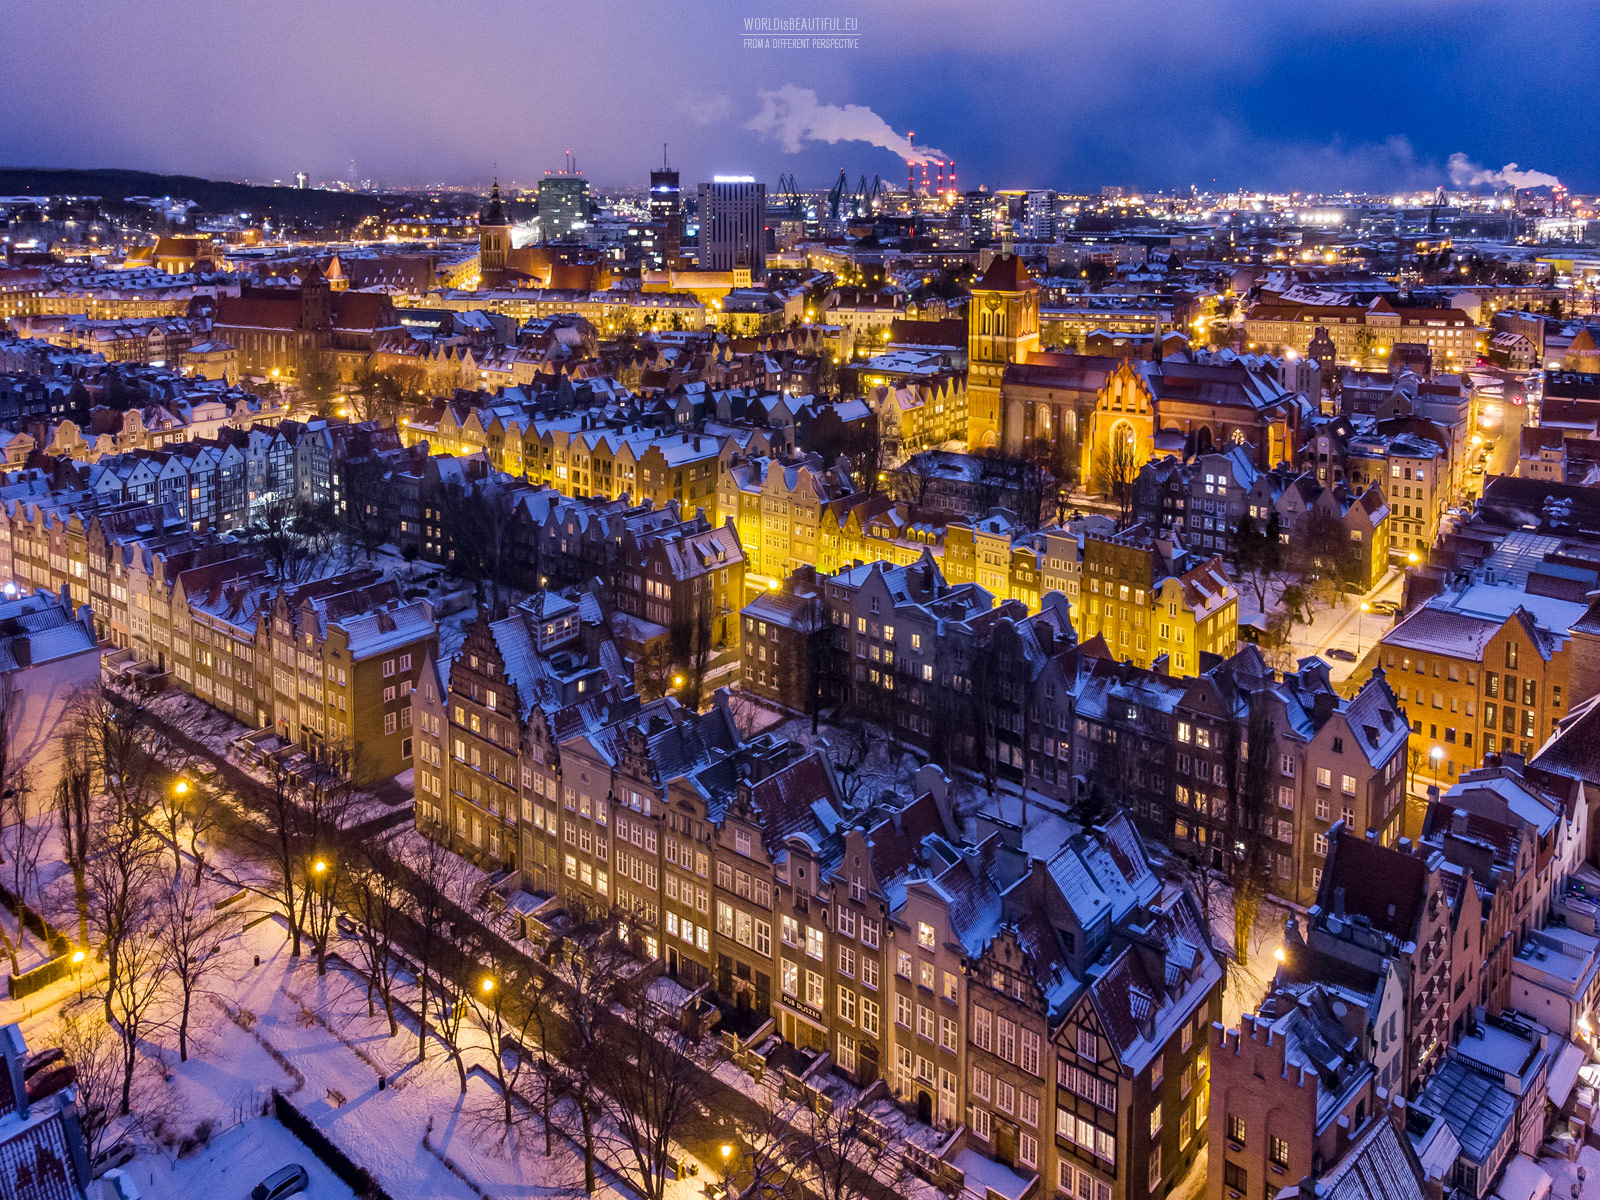 Światła miasta - nocna panorama Gdańska